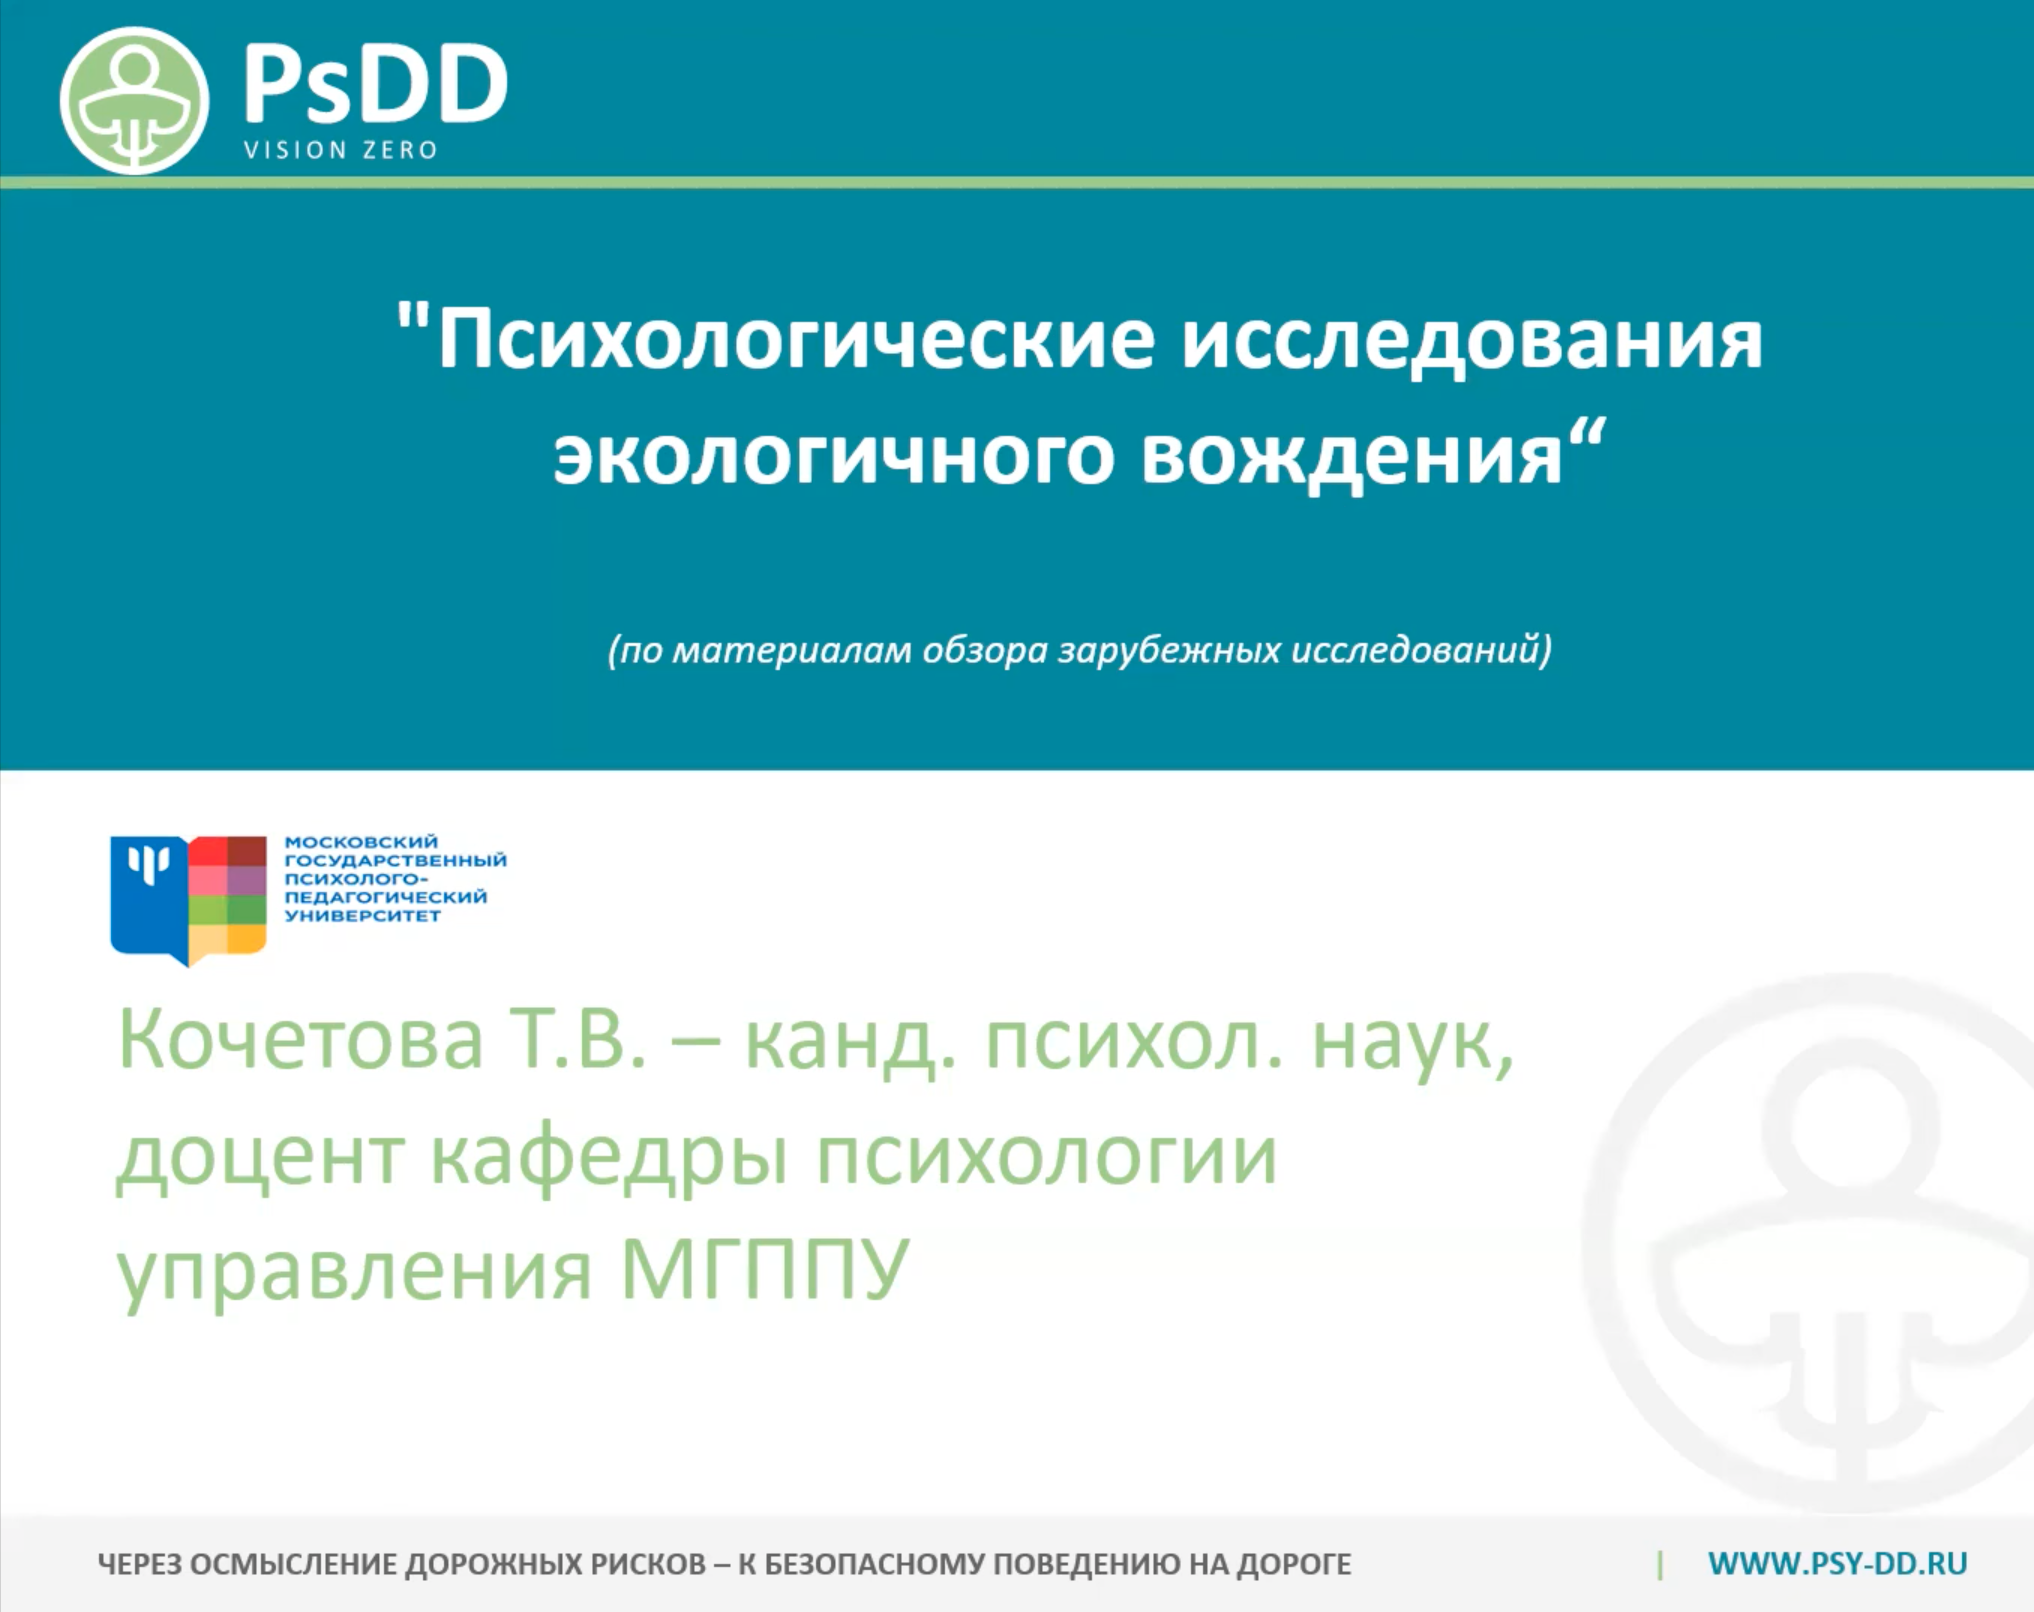 7 апреля Кочетова Т.В. (https://mgppu.ru/people/137/913) принимала участие в работе семинара 